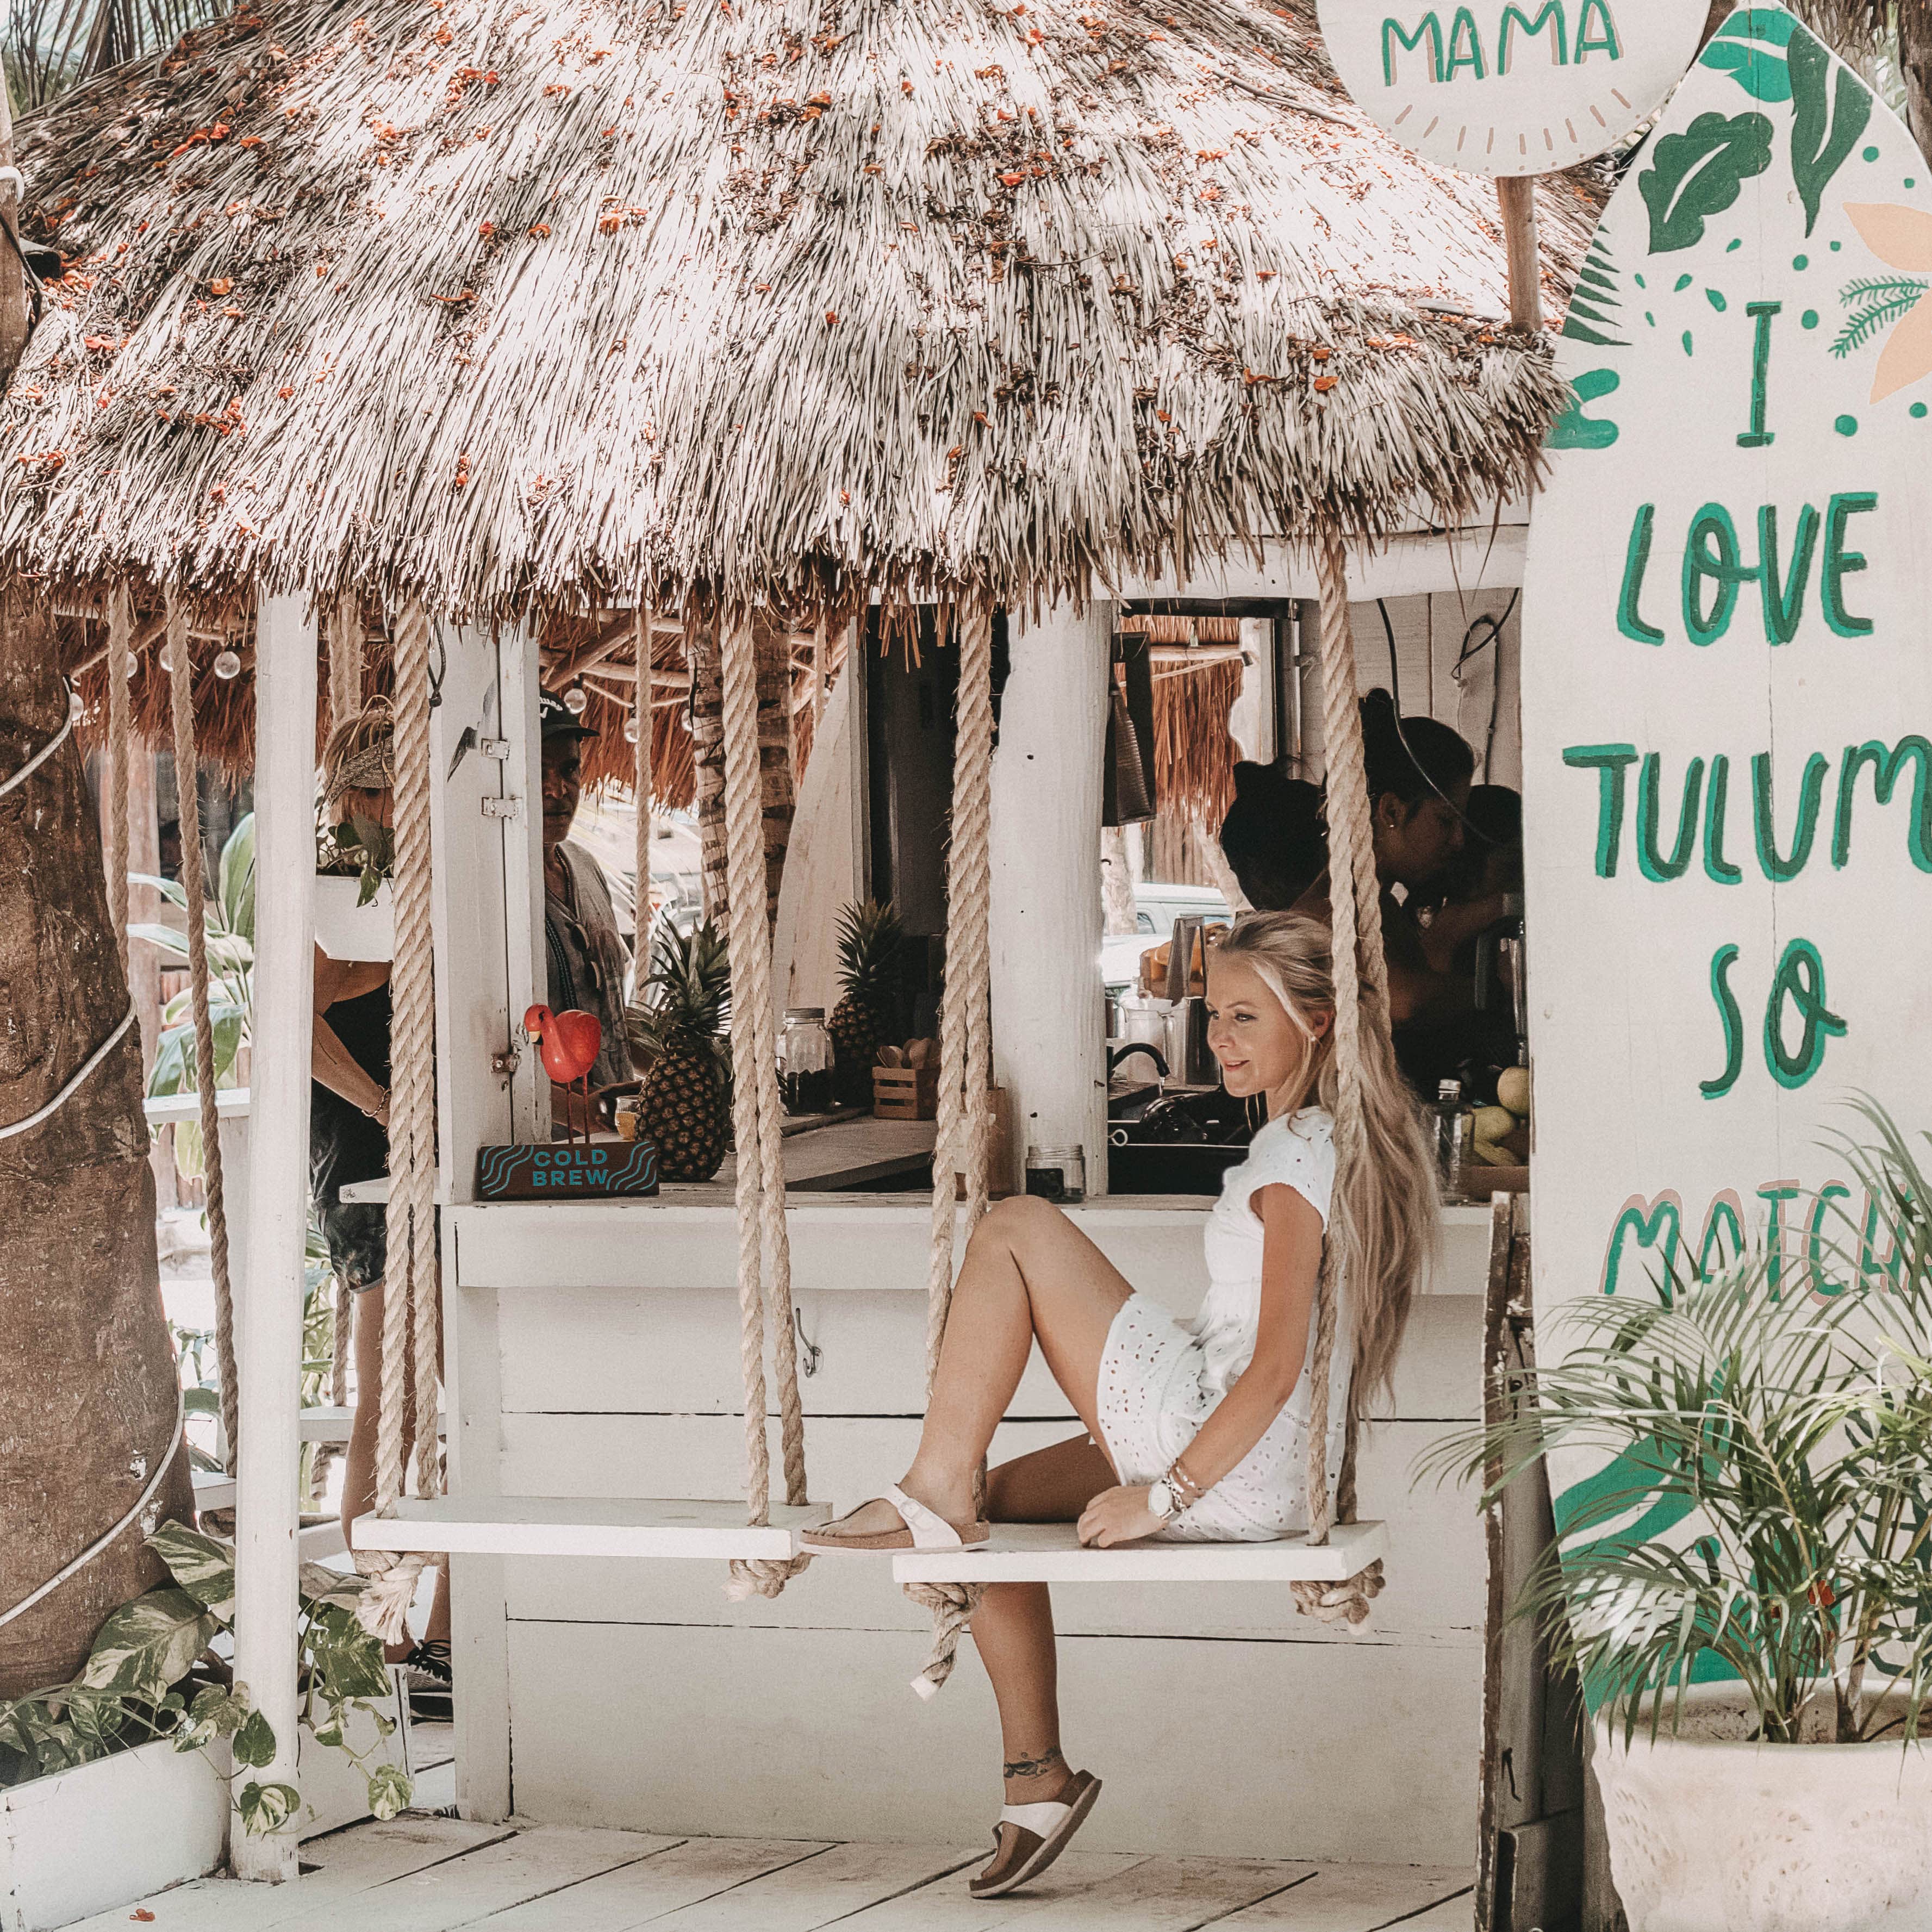 Mis recomendaciones de restaurantes en Cancún, Playa del Carmen y Tulum